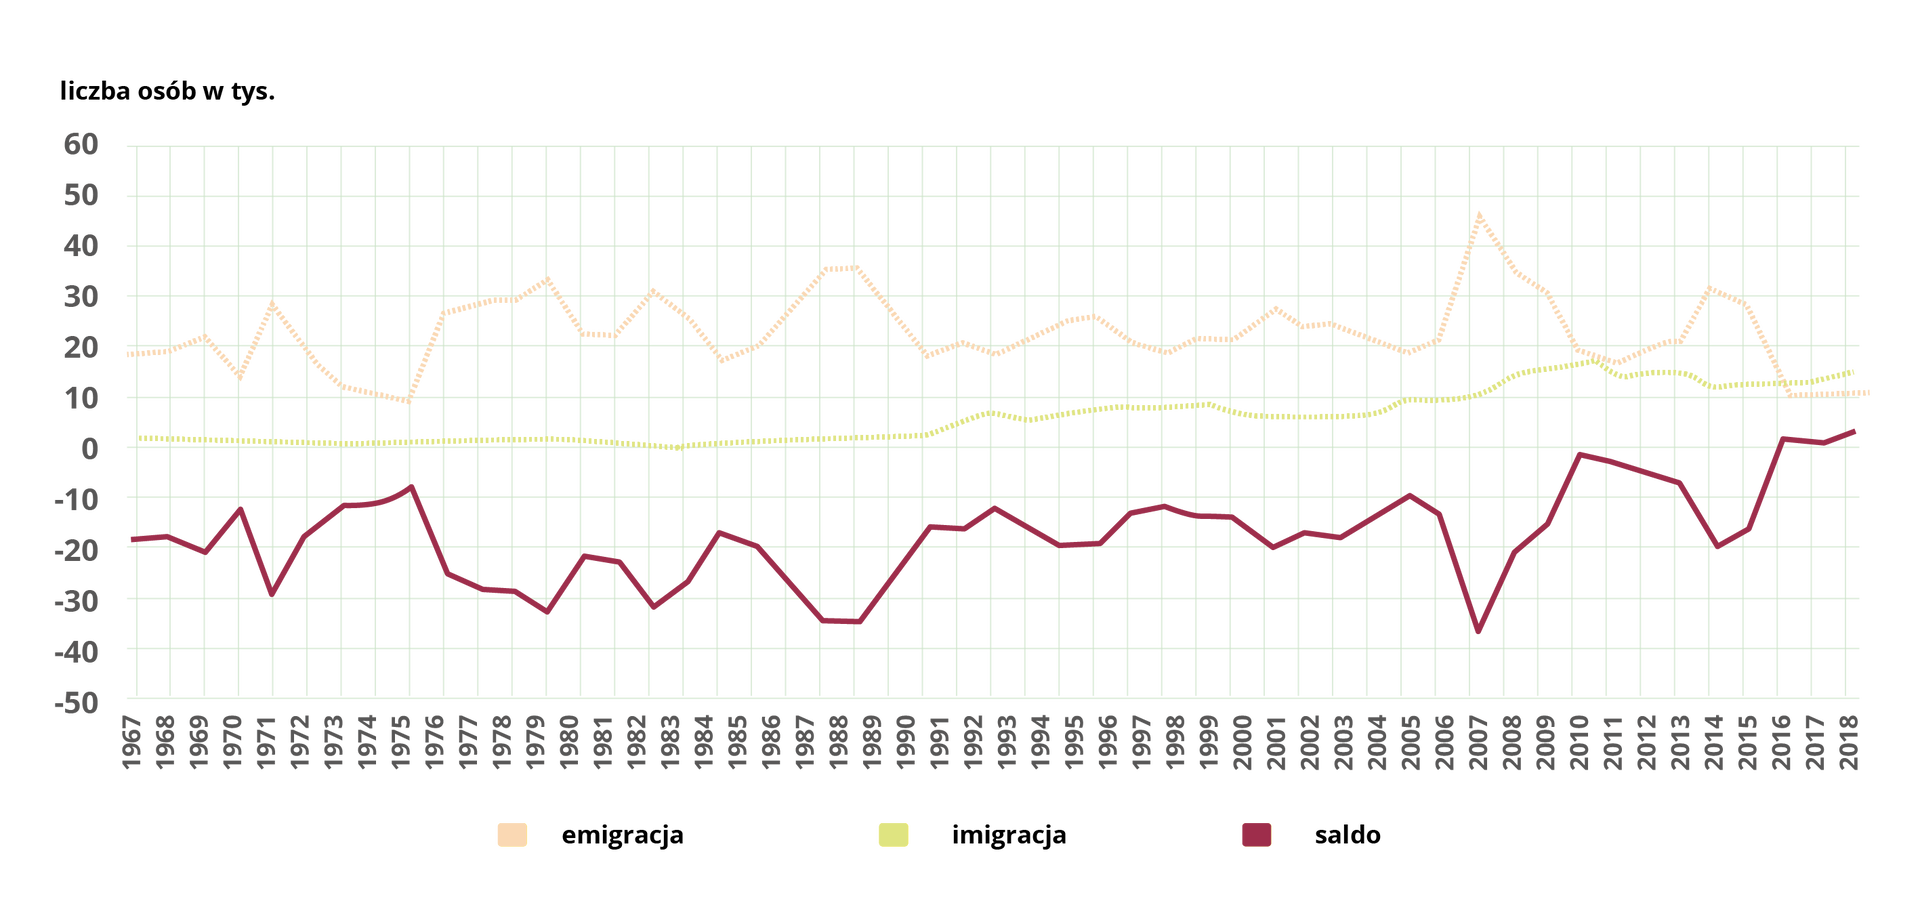 Wykres liniowy prezentuje dane o emigracji i imigracji na pobyt stały dla Polski w latach 1967–2018 wg danych GUS. Na osi x przedstawione są lata od 1967 do 2018 roku z podziałką co rok, na osi y liczba osób w tysiącach od -50 tysięcy do 60 tysięcy z podziałką co 10 tysięcy. Pomarańczowa, przerywana linia obrazuje emigrację. Rozpoczyna się na wartości około 19 tysięcy w 1967 roku, wzrasta do wartości około 21 tysięcy w 1969 roku, spada do wartości około 15 tysięcy w 1970 roku, wzrasta do wartości około 30 tysięcy w 1971 roku, spada do wartości około 10 tysięcy w 1976 roku, wzrasta do wartości około 32 tysięcy w 1980 roku, spada do wartości około 21 tysięcy w 1981 i 1982 roku, wzrasta do wartości 30 tysięcy w 1983 roku, spada do wartości 18 tysięcy w 1985 roku, wzrasta do wartości 35 tysięcy w 1988 i 1989 roku i spada do wartości 19 tysięcy w 1991 roku. W latach 1991 – 2006 waha się pomiędzy wartością 19 a 26 tysięcy. Kolejno wzrasta do wartości 45 tysięcy w 2007 roku, ostro spada do wartości 17 tysięcy w 2011 roku, wzrasta do wartości 30 tysięcy w 2014 roku, spada do wartości 10 tysięcy w 2016 roku i na tym poziomie utrzymuje się do 2018 roku. Żółta, przerywana linia obrazuje imigrację. Jest ona na poziomie zbliżonym do 0 na osi y w latach 1967 – 1991. W latach 1991 – 2005 stopniowo się wznosi aż do poziomu 10 tysięcy, a w latach 2005 – 2018 zmienia się w zakresie od 10 tysięcy do 15 tysięcy. Czerwona linia obrazuje saldo. Rozpoczyna się na wartości -19 tysięcy w 1967 roku, spada do wartości około -21 tysięcy w 1969 roku, wzrasta do wartości około -15 tysięcy w 1970 roku, spada do wartości około -30 tysięcy w 1971 roku, wzrasta do wartości około -10 tysięcy w 1976 roku, spada do wartości około -32 tysięcy w 1980 roku, wzrasta do wartości około -21 tysięcy w 1981 i 1982 roku, spada do wartości -30 tysięcy w 1983 roku, wzrasta do wartości -18 tysięcy w 1985 roku, spada do wartości – 35 tysięcy w 1988 i 1989 roku i wzrasta do wartości -19 tysięcy w 1991 roku. W latach 1991 – 2006 waha się pomiędzy wartością -20 a -10 tysięcy. Kolejno spada do wartości -38 tysięcy w 2007 roku, wzrasta do 0 w 2010 roku, spada do wartości -20 tysięcy w 2014 roku wzrasta do 0 w 2016 roku i na tym poziomie pozostaje do 2018 roku. 